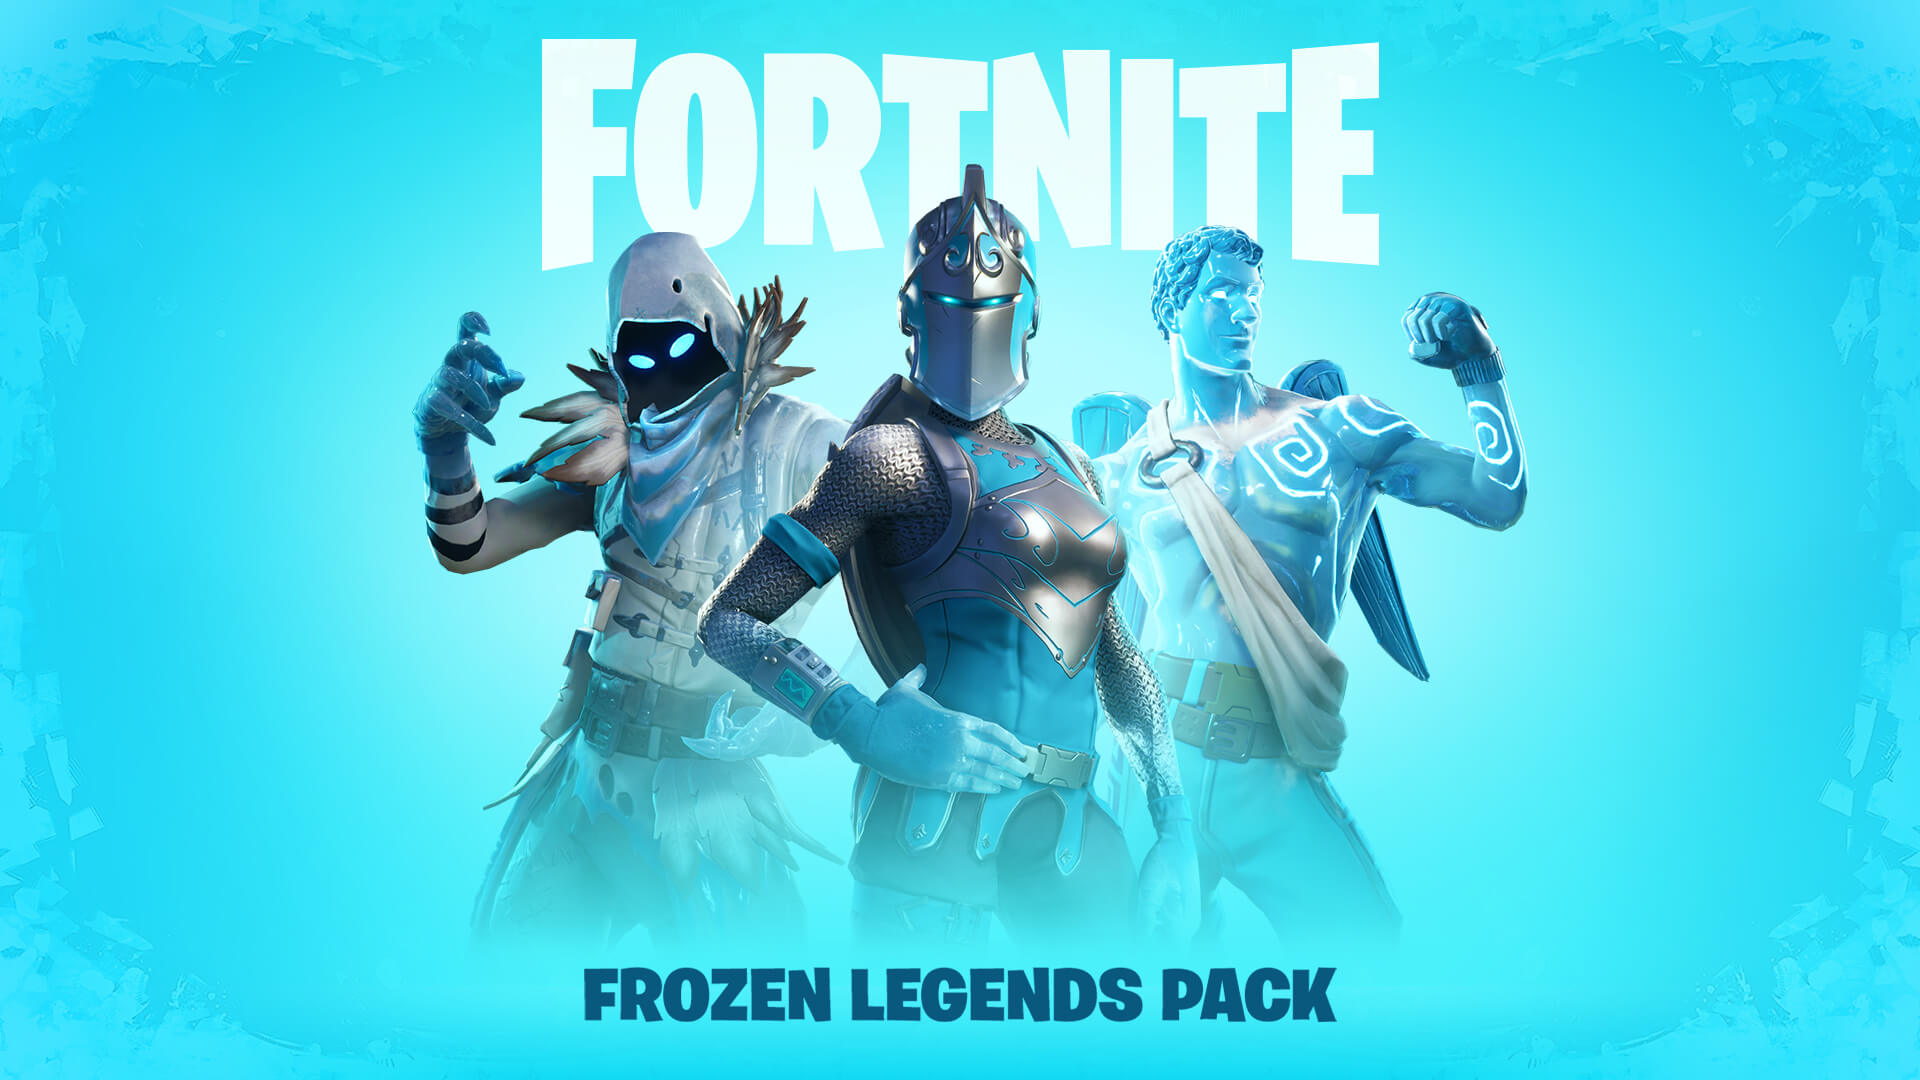 Frozen Legends Pack returns to Fortnite | GoNintendo - 1920 x 1080 jpeg 176kB